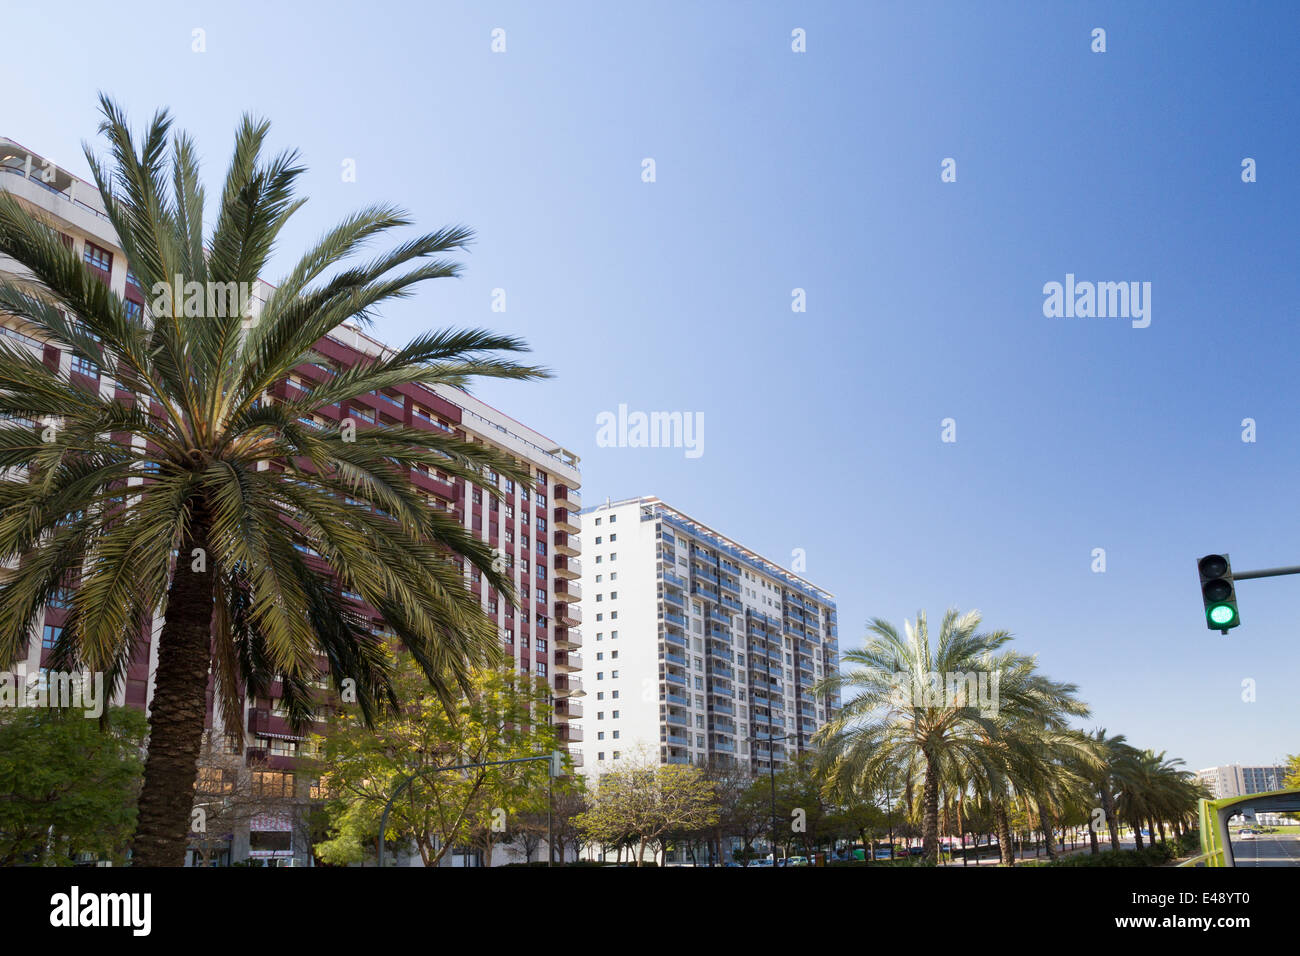 Rue bordé de palmiers, ou avenue à Valence Espagne Banque D'Images